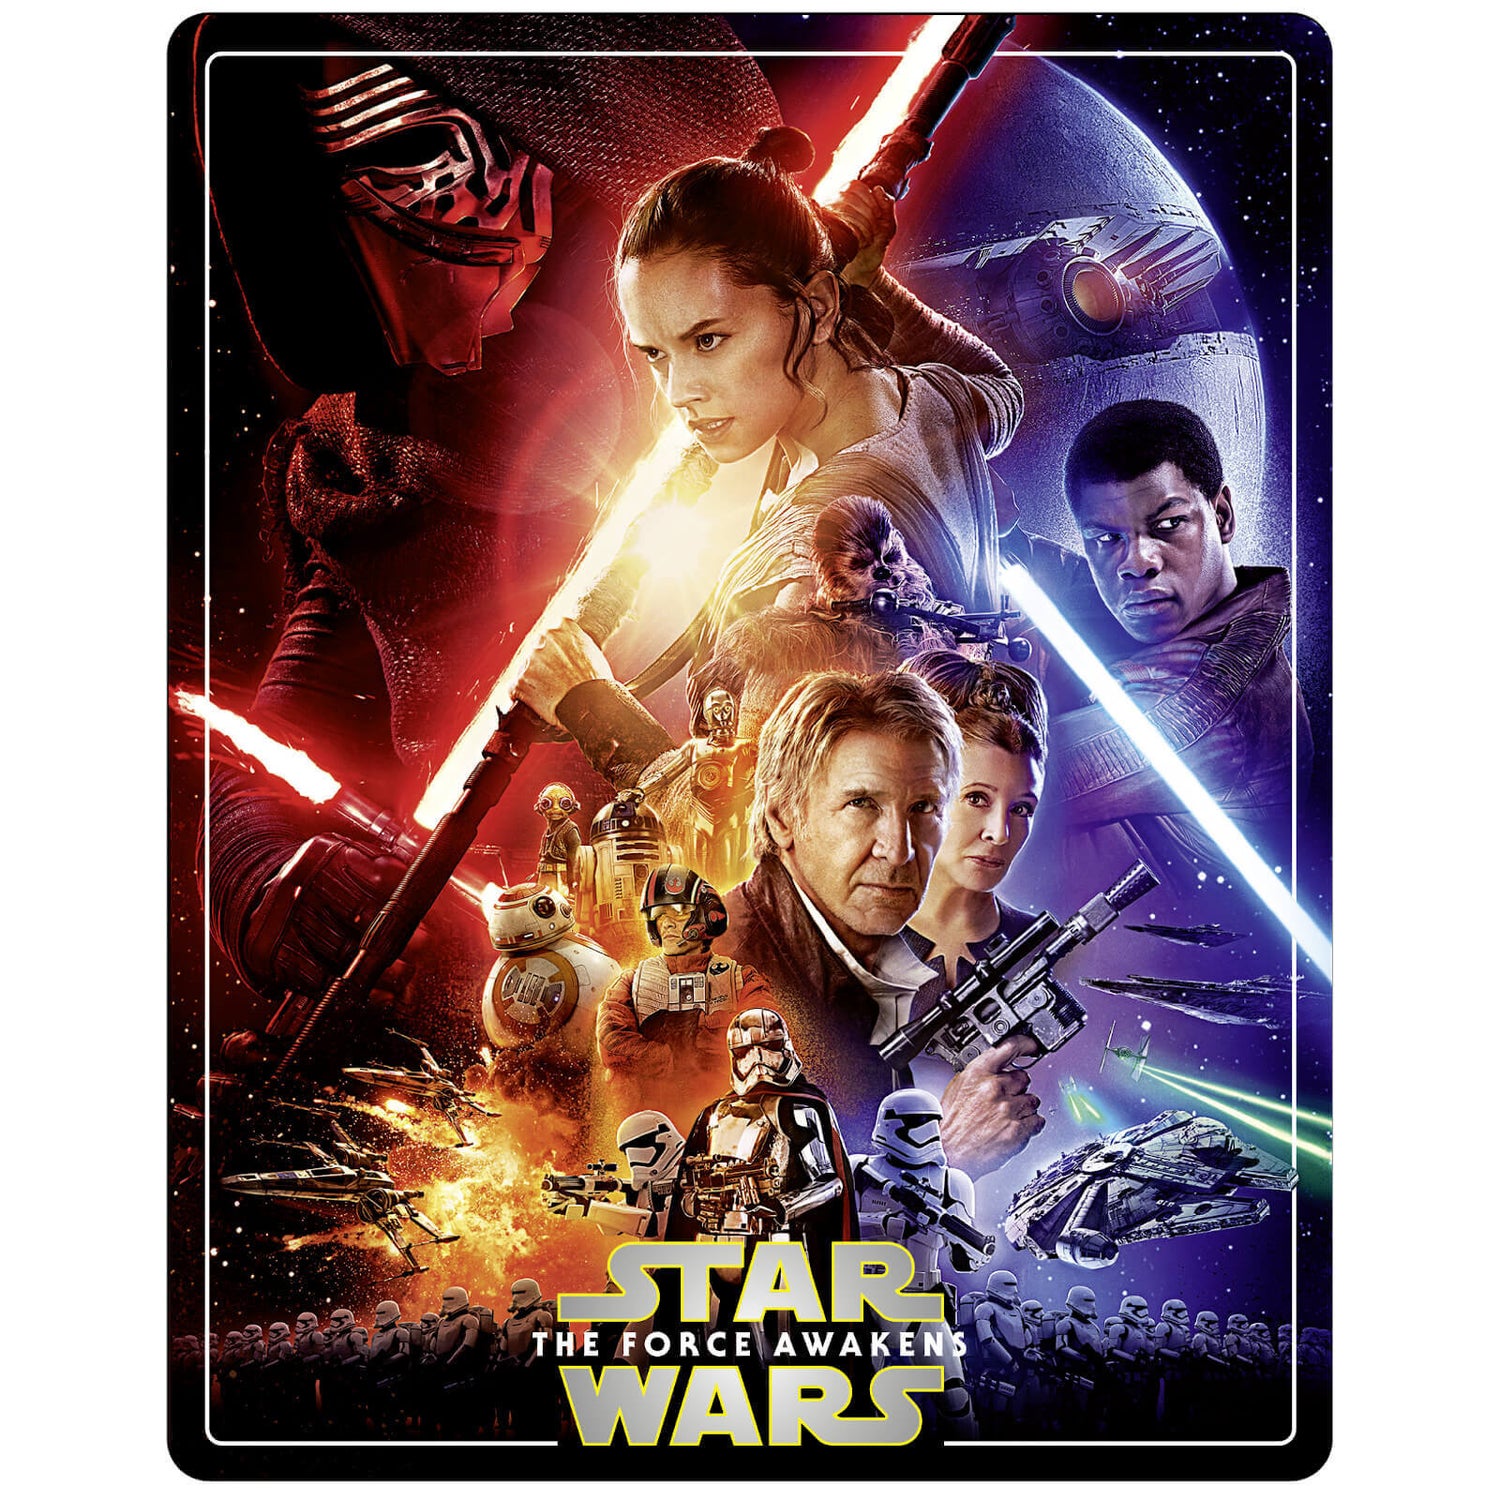 Star Wars VIII - The Last Jedi (4K UHD + Blu-ray Steelbook) Brand